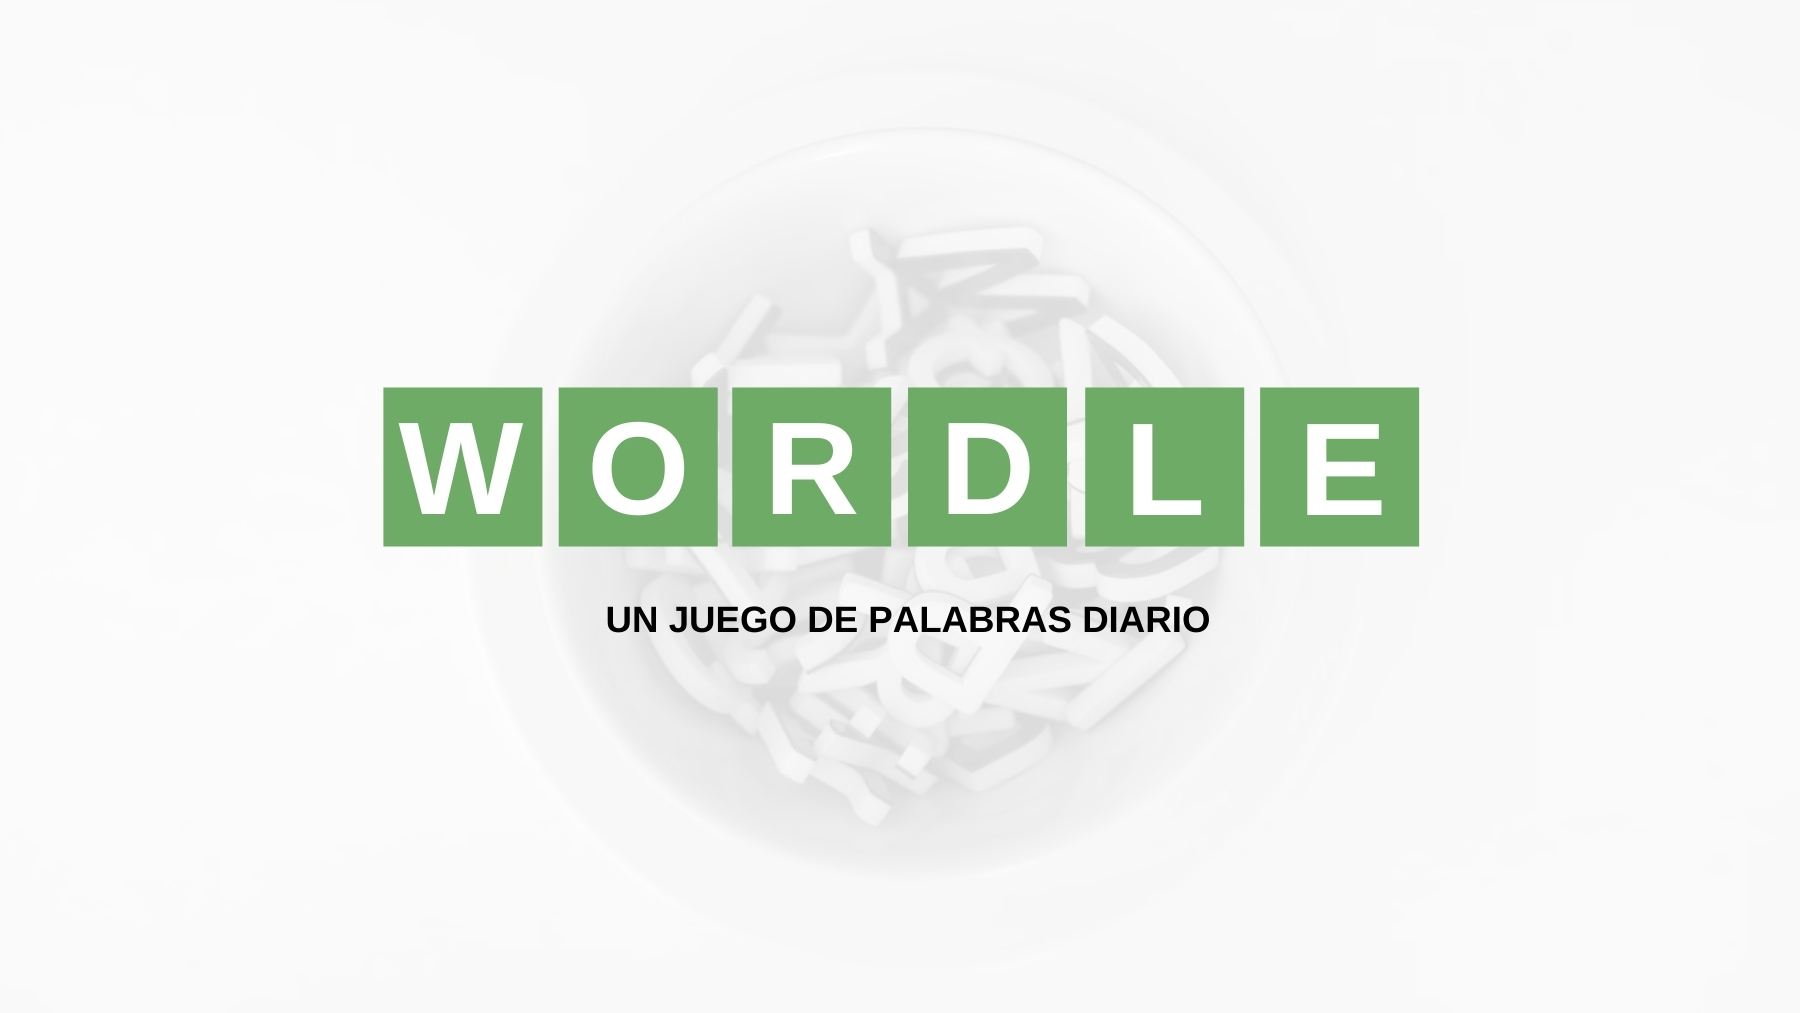 Solución y pistas palabra Wordle español, científico y con tildes hoy, lunes 5 de septiembre de 2022